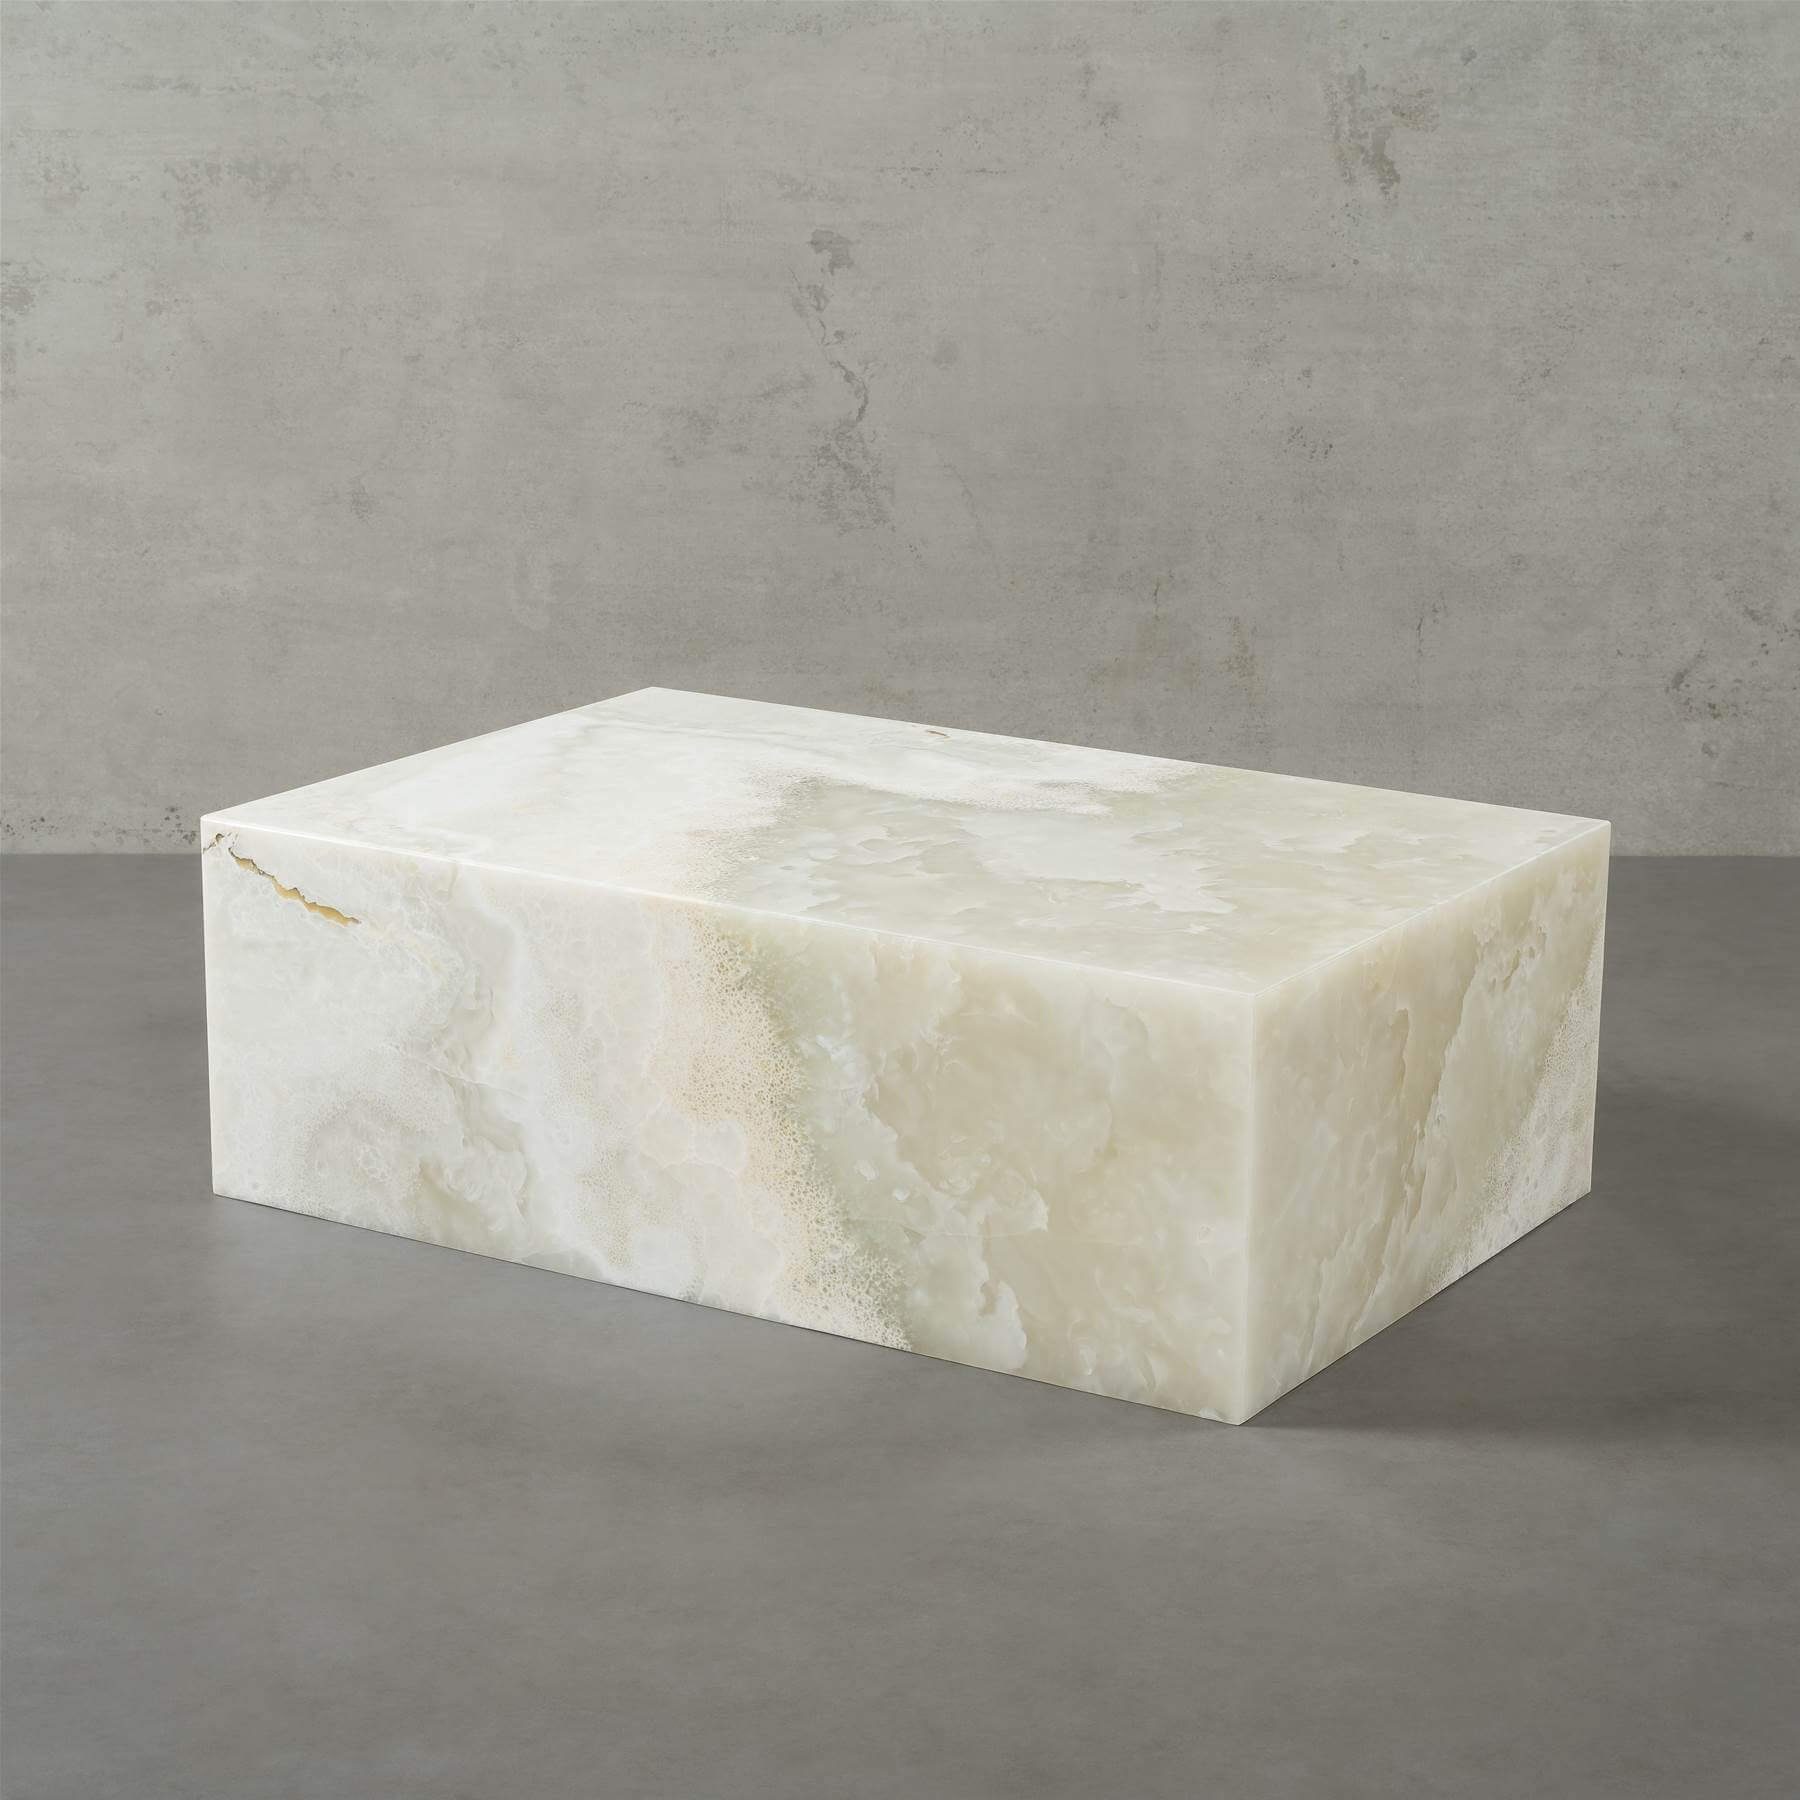 MAGNA Atelier Couchtisch ASPEN mit ECHTEM MARMOR, Ablagetisch Beistelltisch eckig, echter Marmor Tisch, 90x60x30cm Onyx White